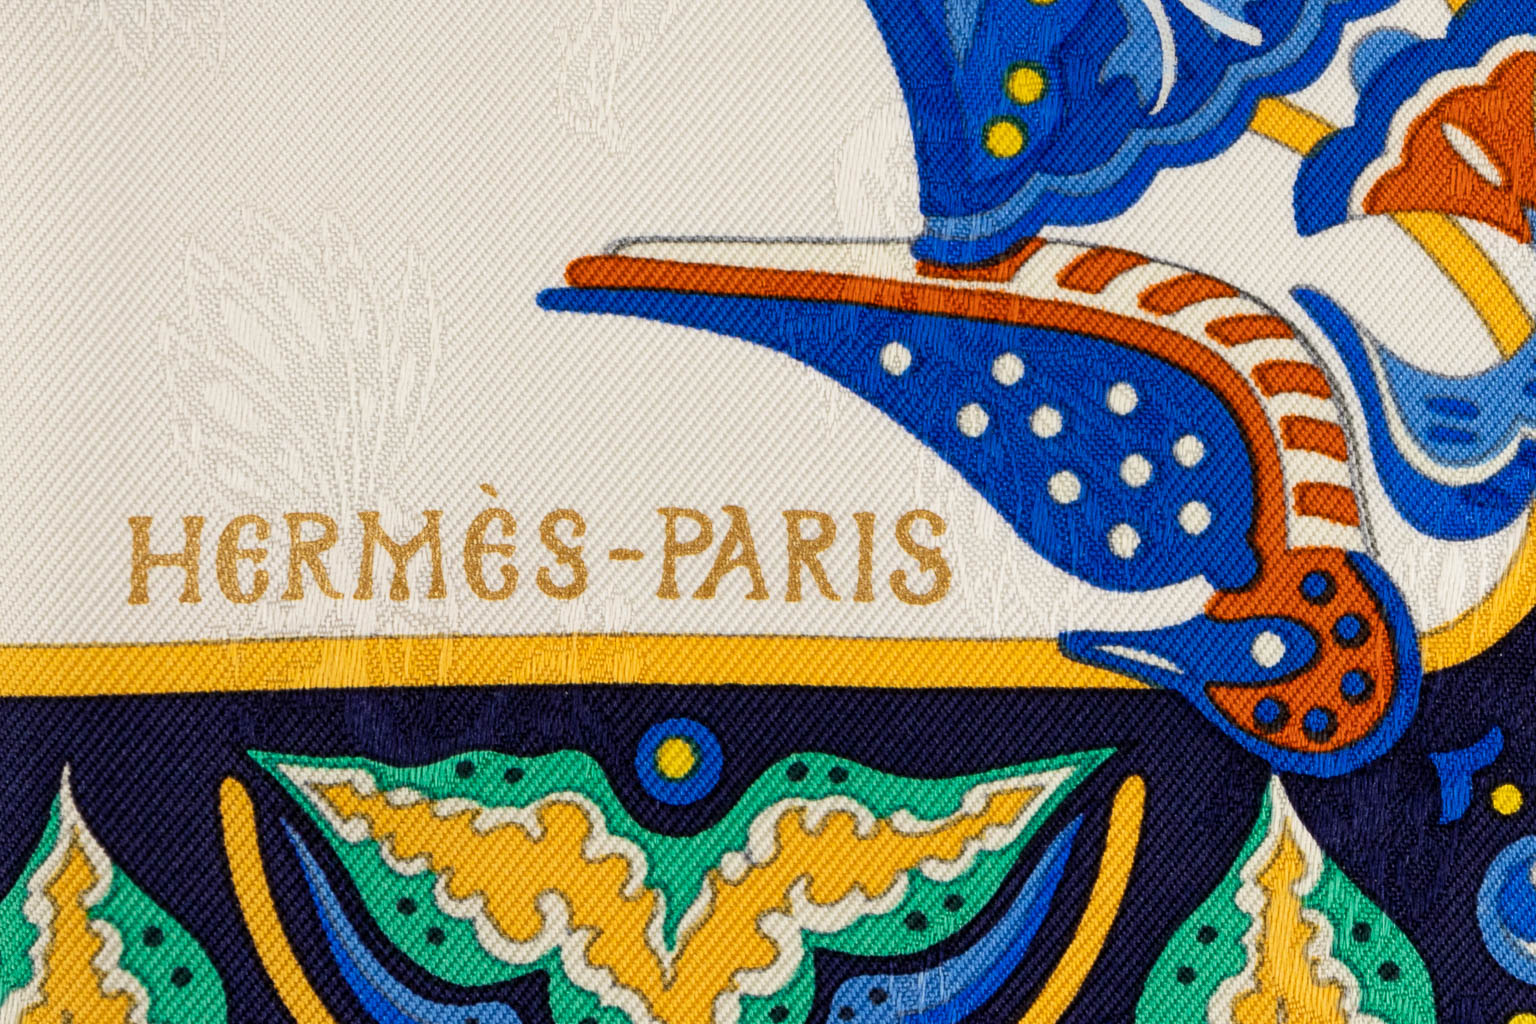 Hermès Paris, een collectie van 2 sjaals (W:90 x H:90 cm)